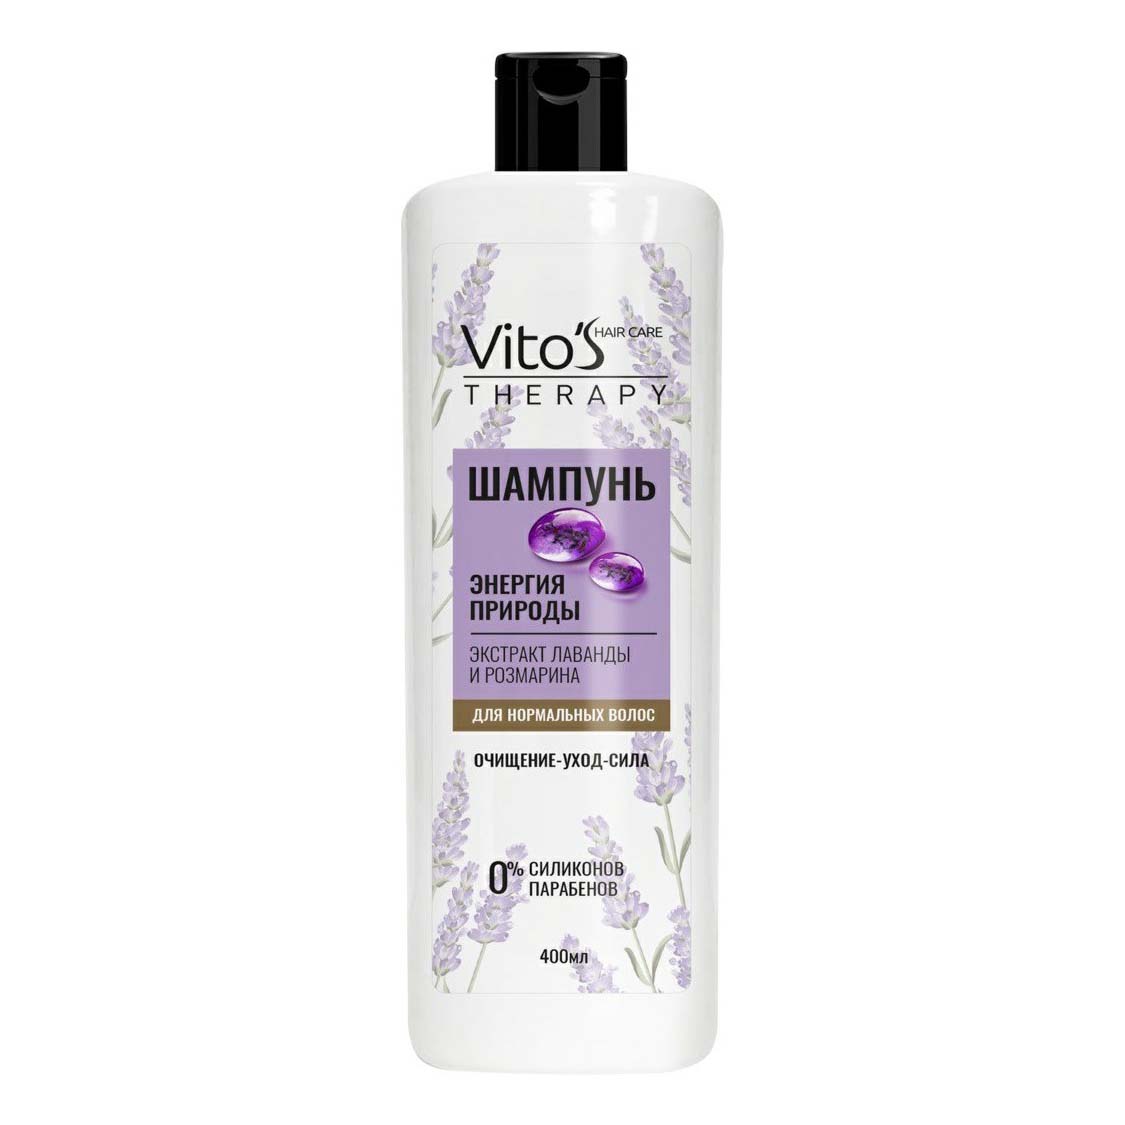 Шампунь Vito's Therapy Энергия природы очищающий для всех типов волос 400 мл